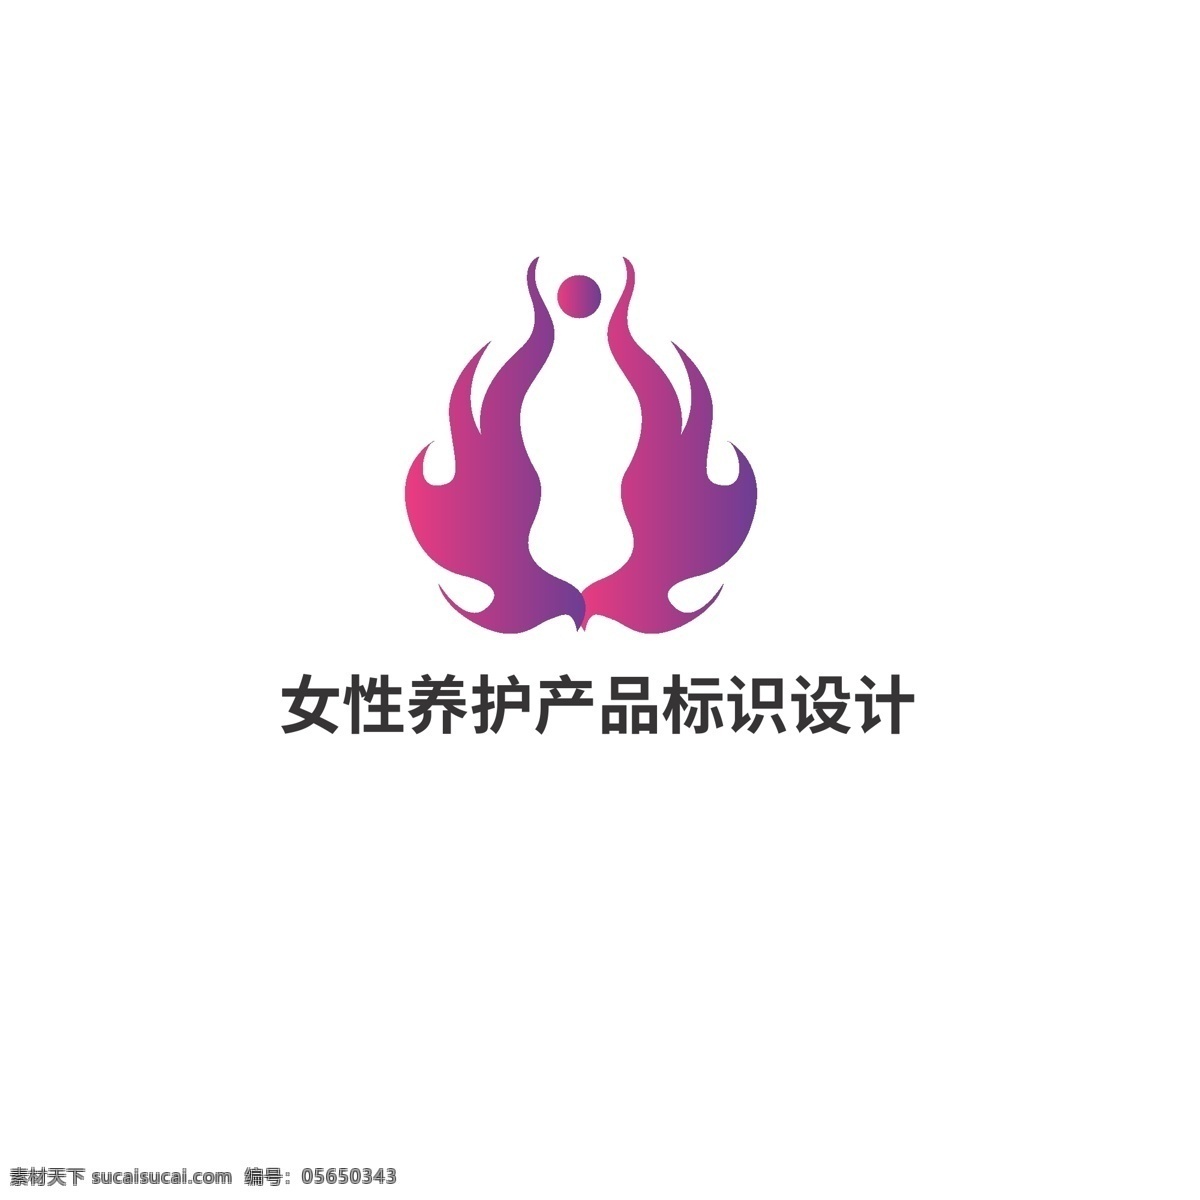 女性 养护 产品 标识设计 标识 火焰 凤凰